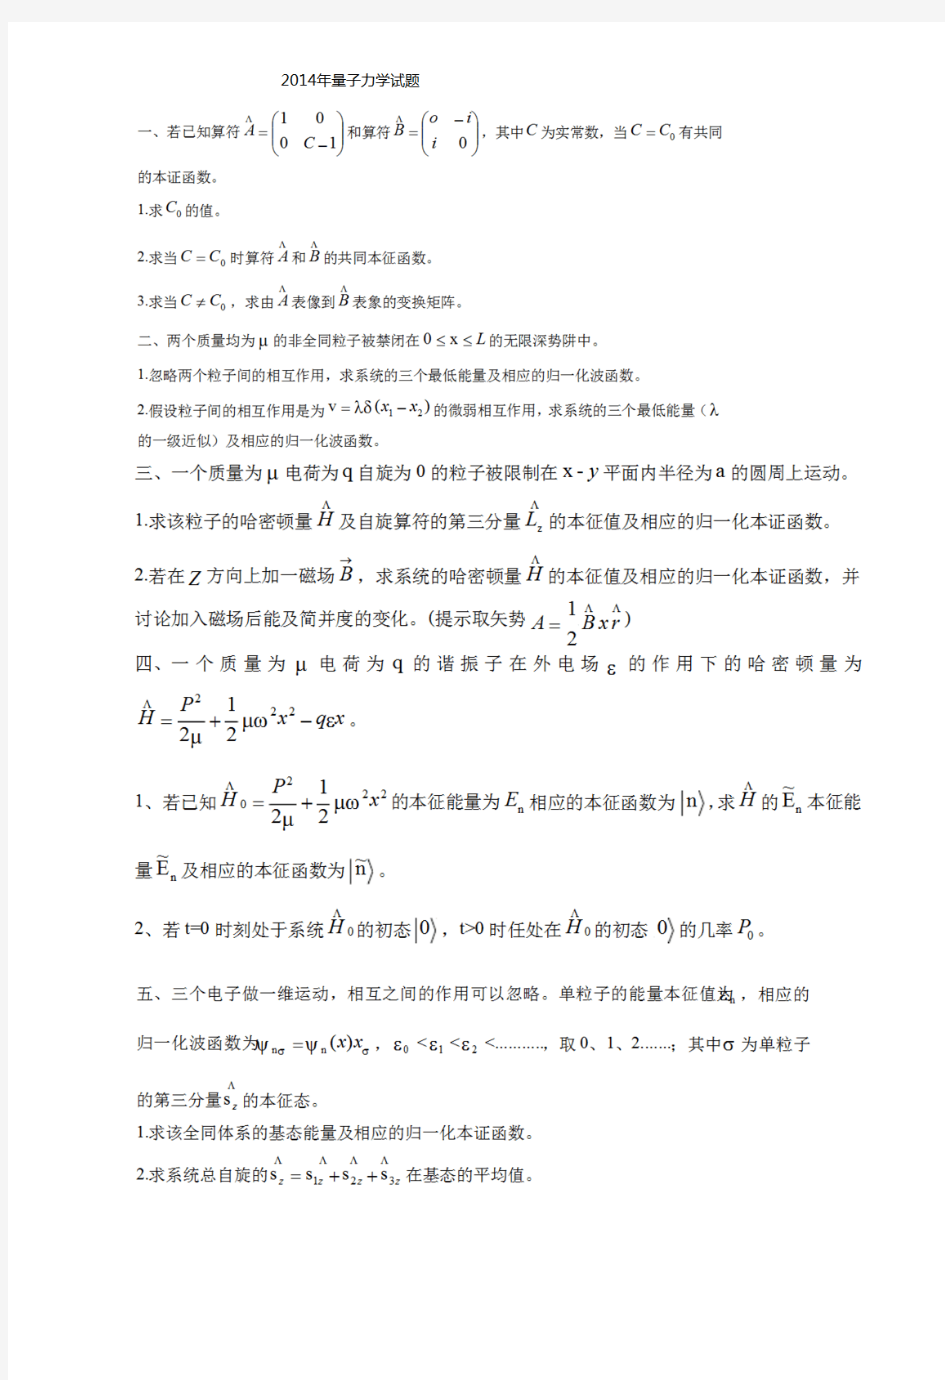 中科院量子力学考研真题.pdf